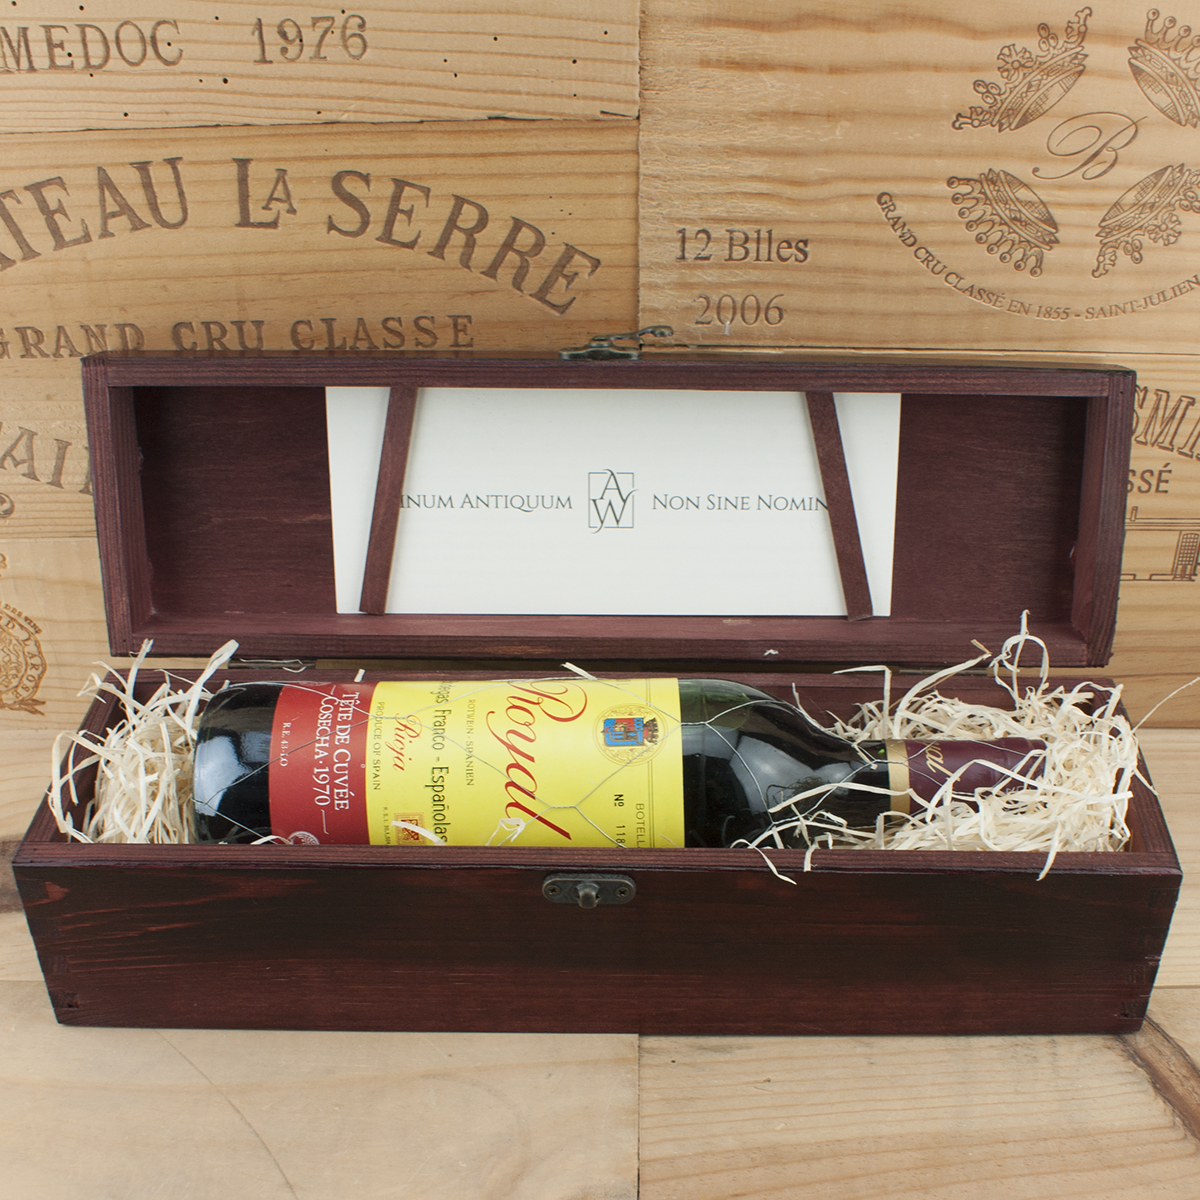 1970 Rioja Royal Bodegas Franco in the red box